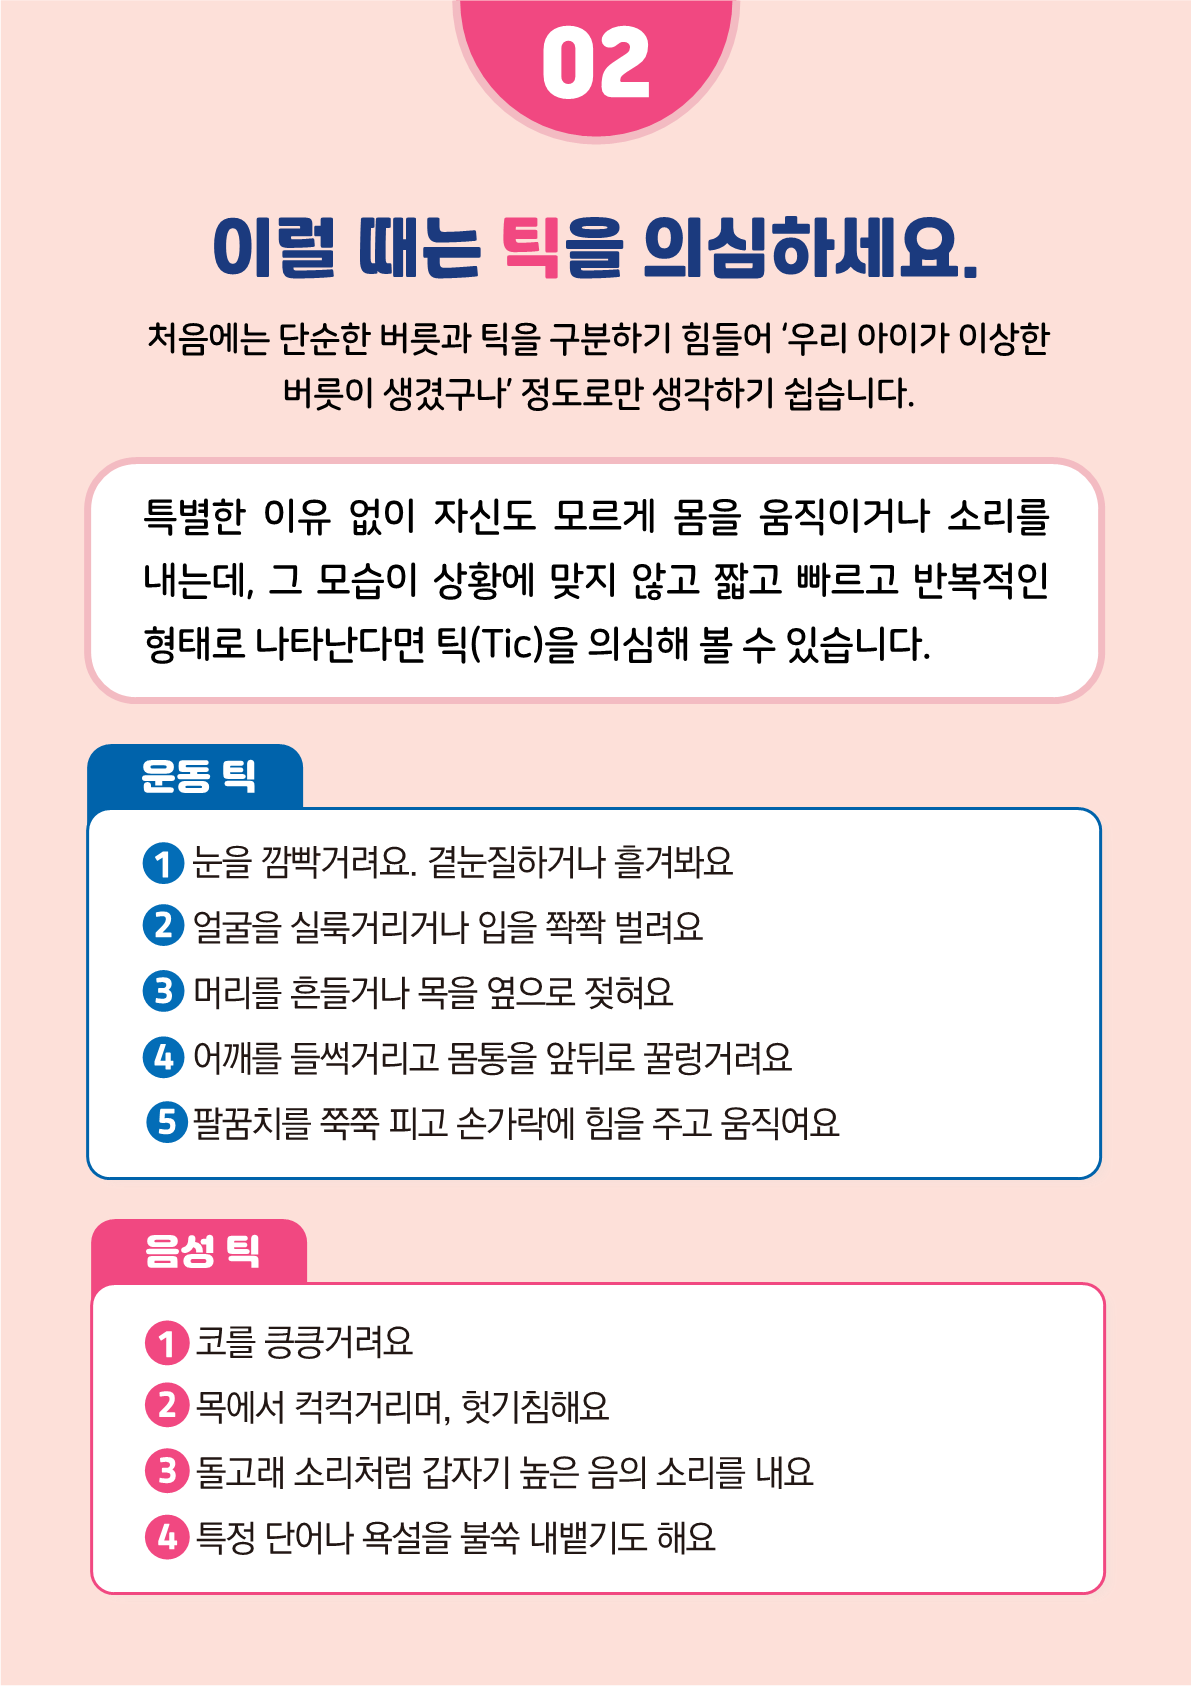 [붙임2]카드뉴스 제2021-5_틱장애(초등학부모용)_6.png